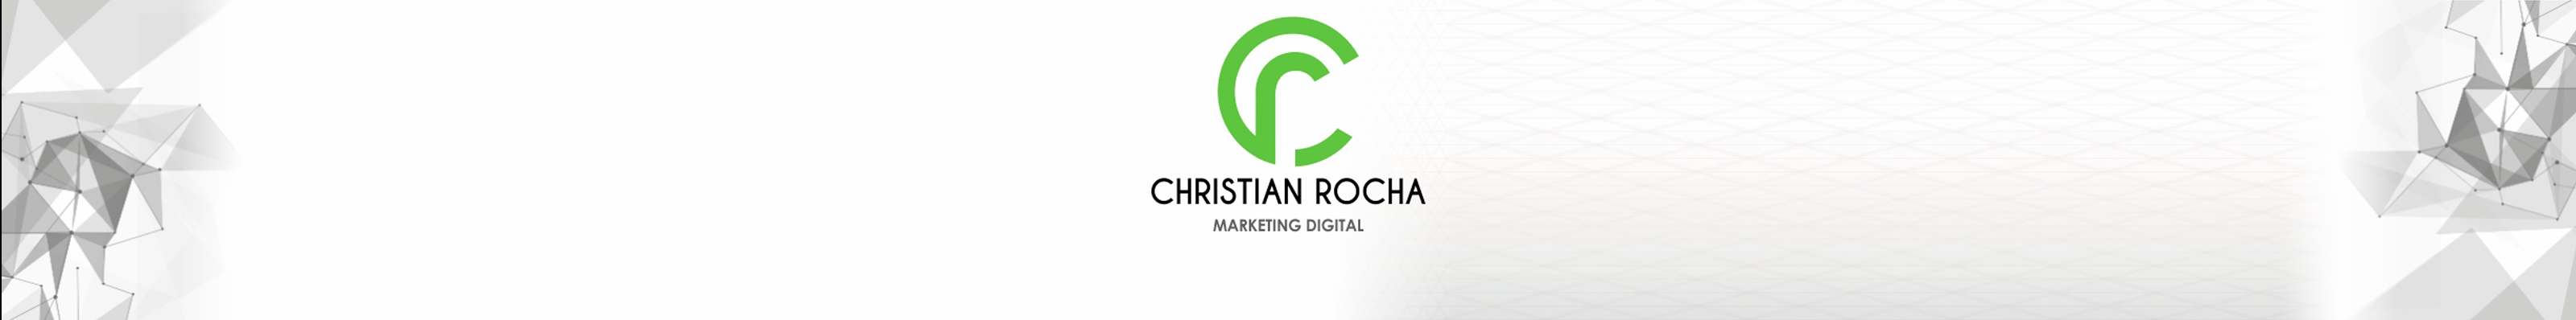 Christian Rochas profilbanner